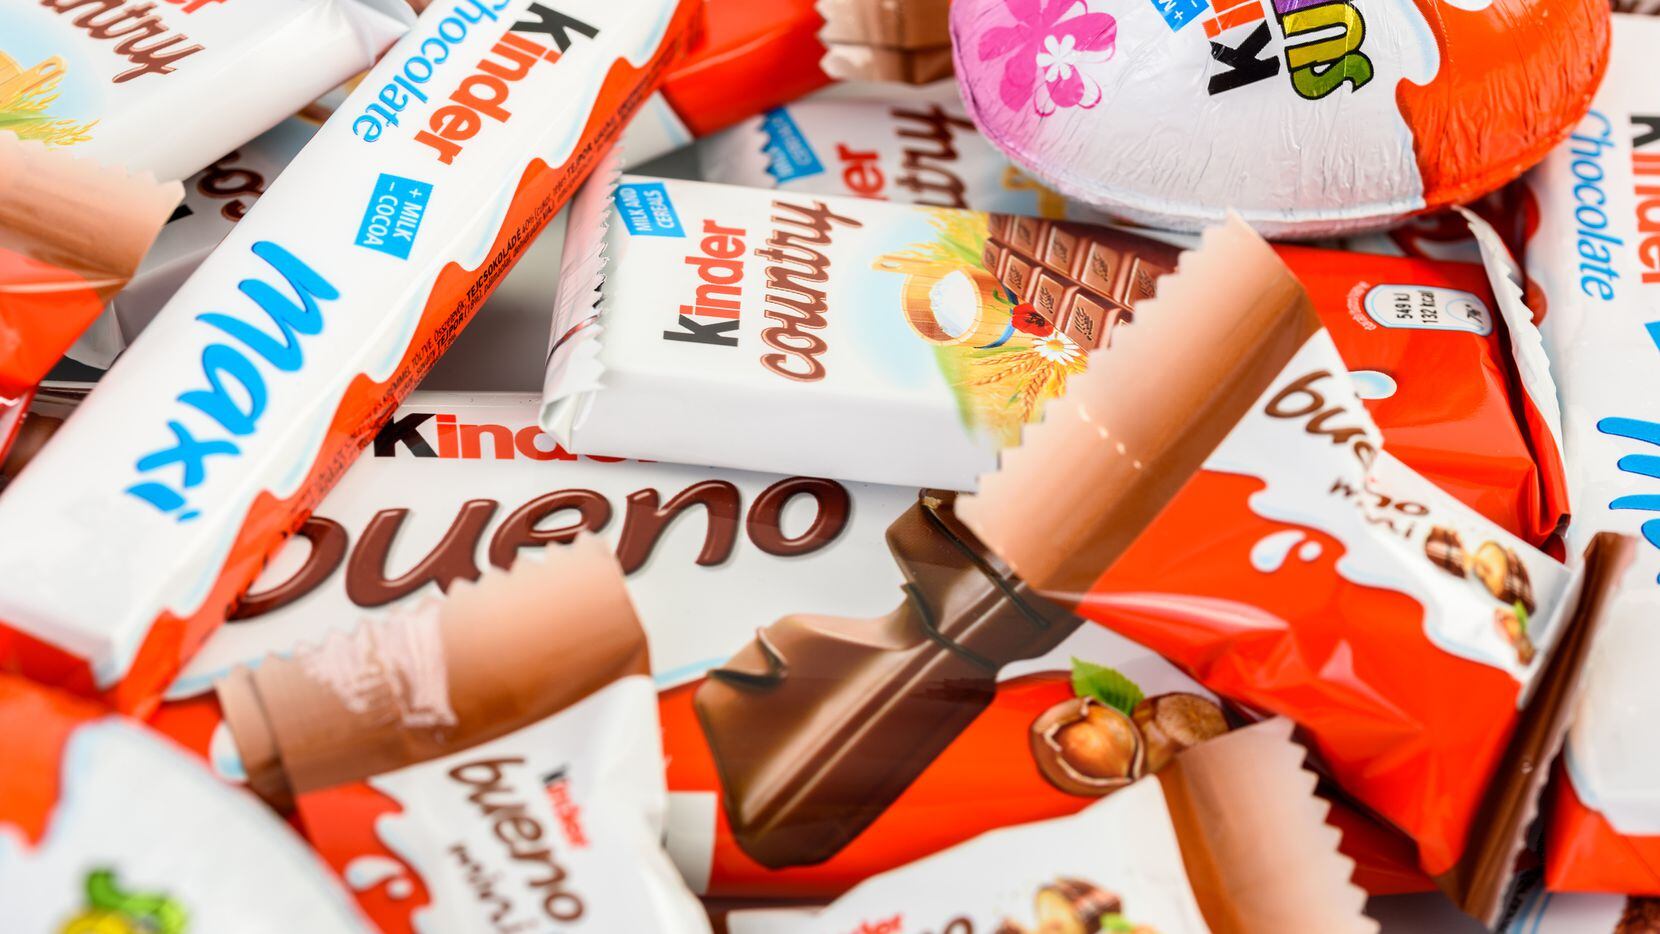 Ferrero retiró del mercado algunos productos kinder debido a posible contaminación con...